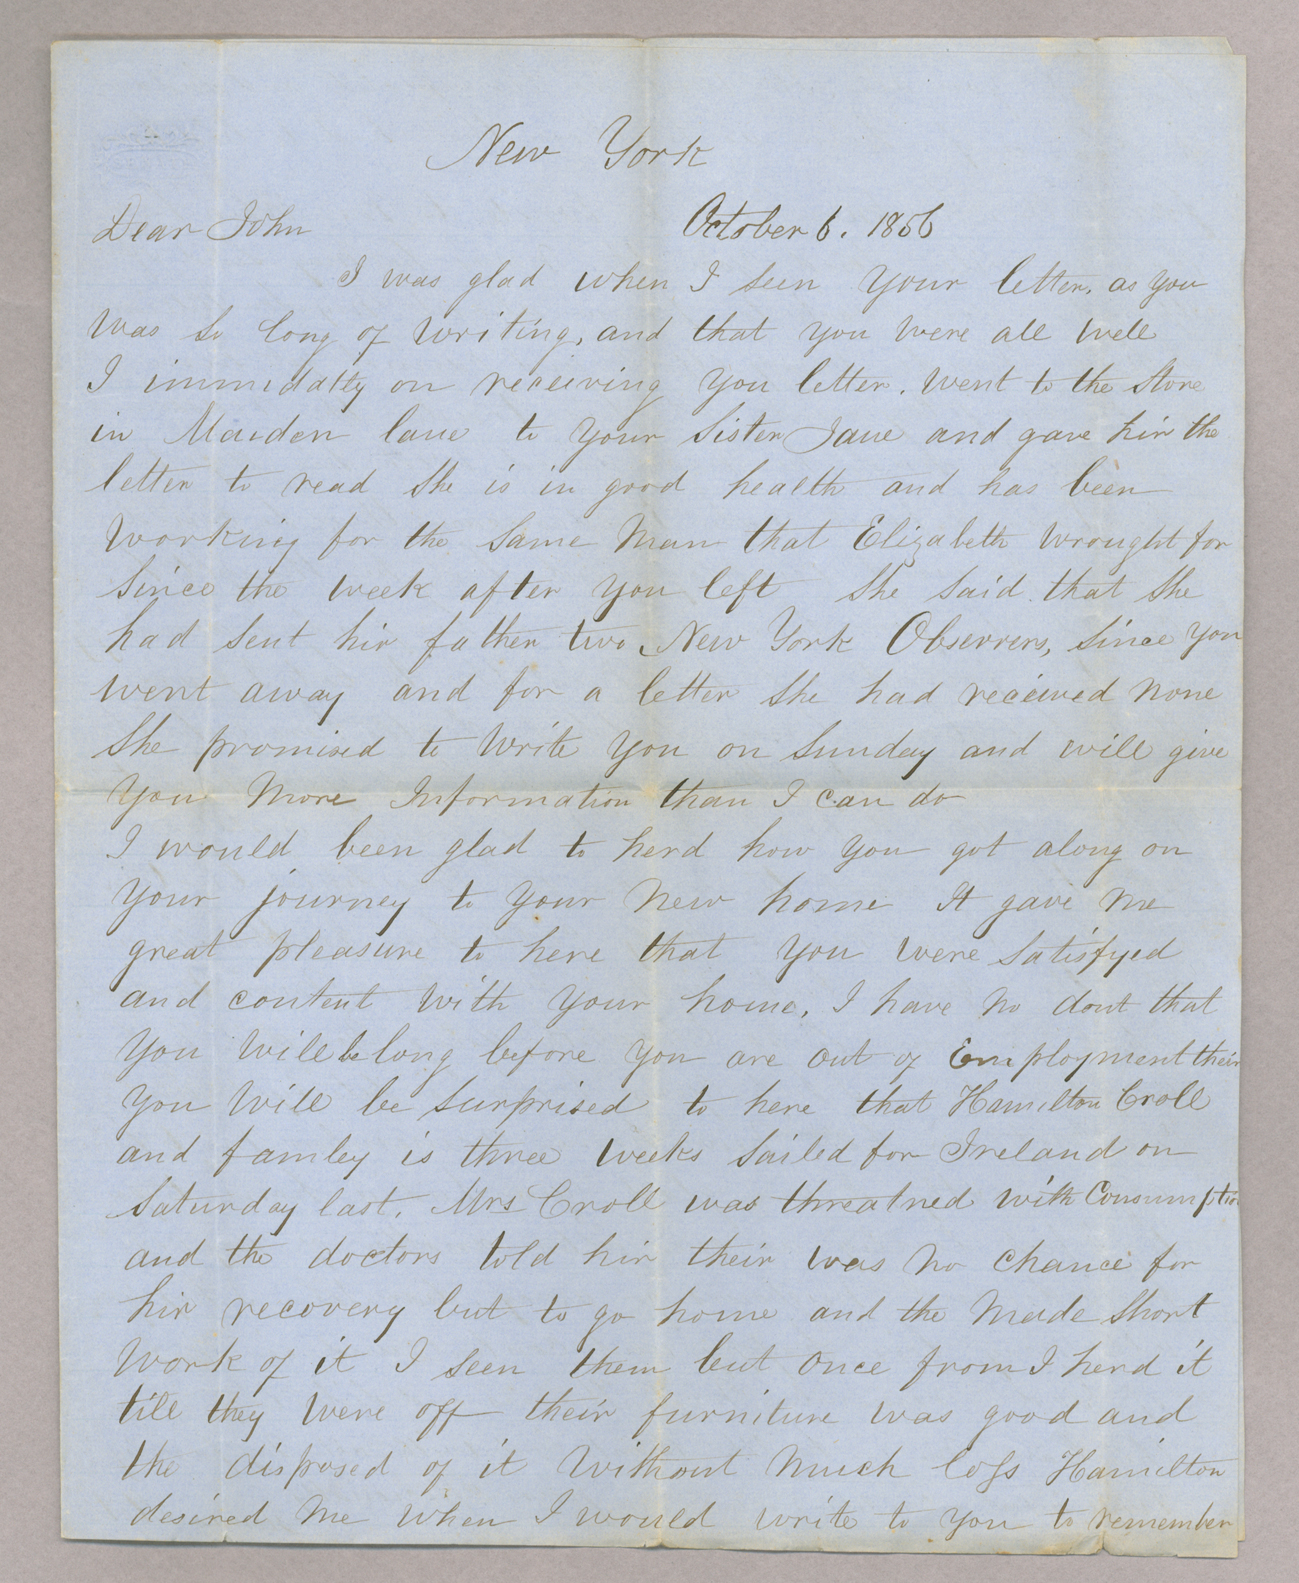 Letter. James Stott, New York, New York, to "Dear John" [John E. Brownlee], n. p., Page 1